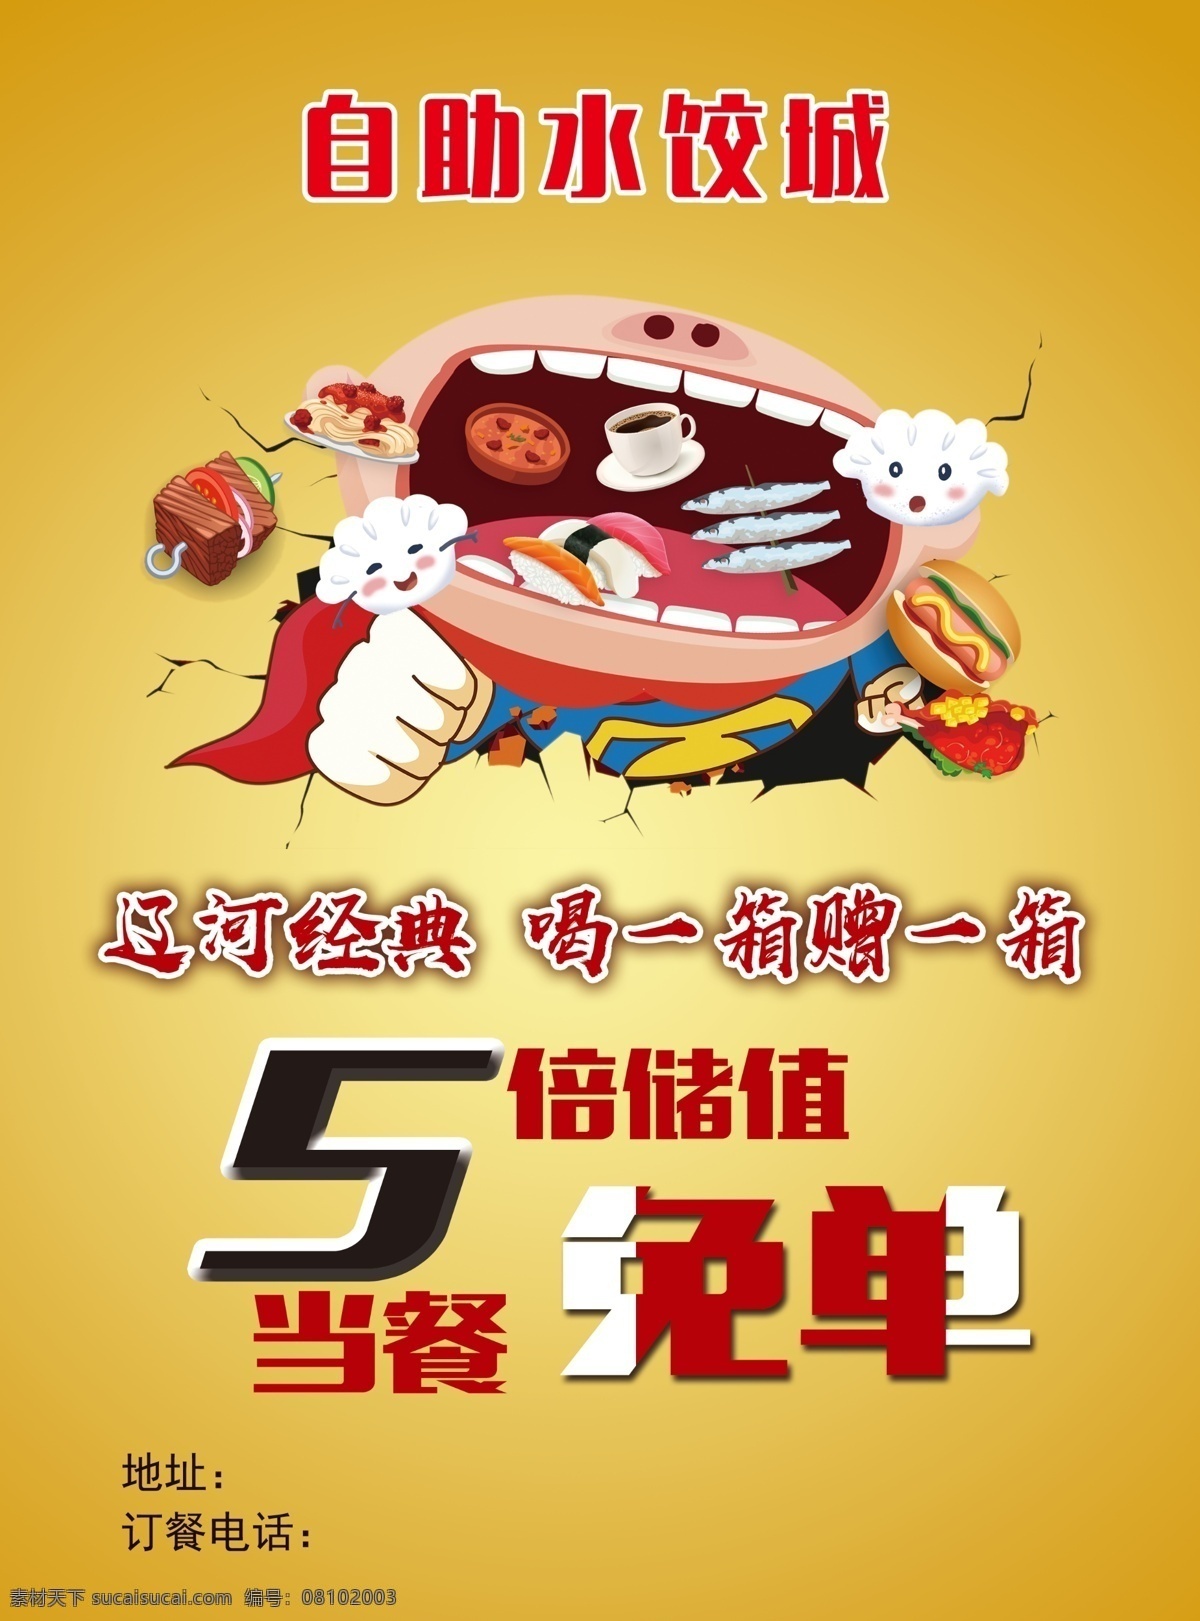 水饺 吃货 大胃王 卡通 胖 胖子 折扣 好吃 文化艺术 传统文化